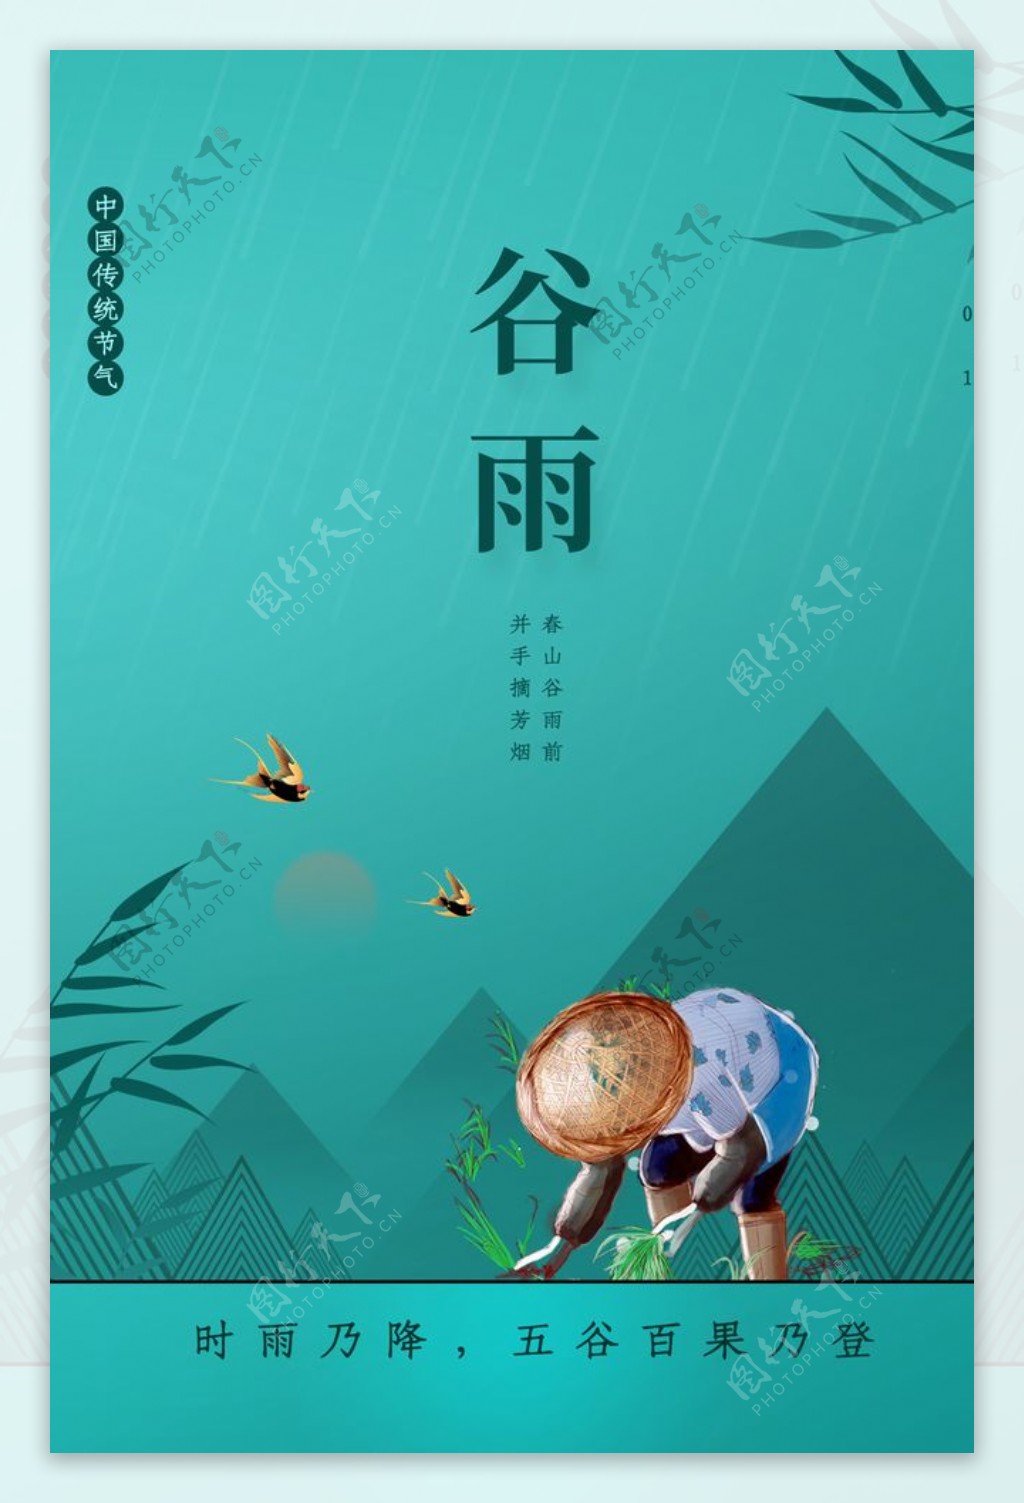 谷雨传统节日宣传活动海报素材